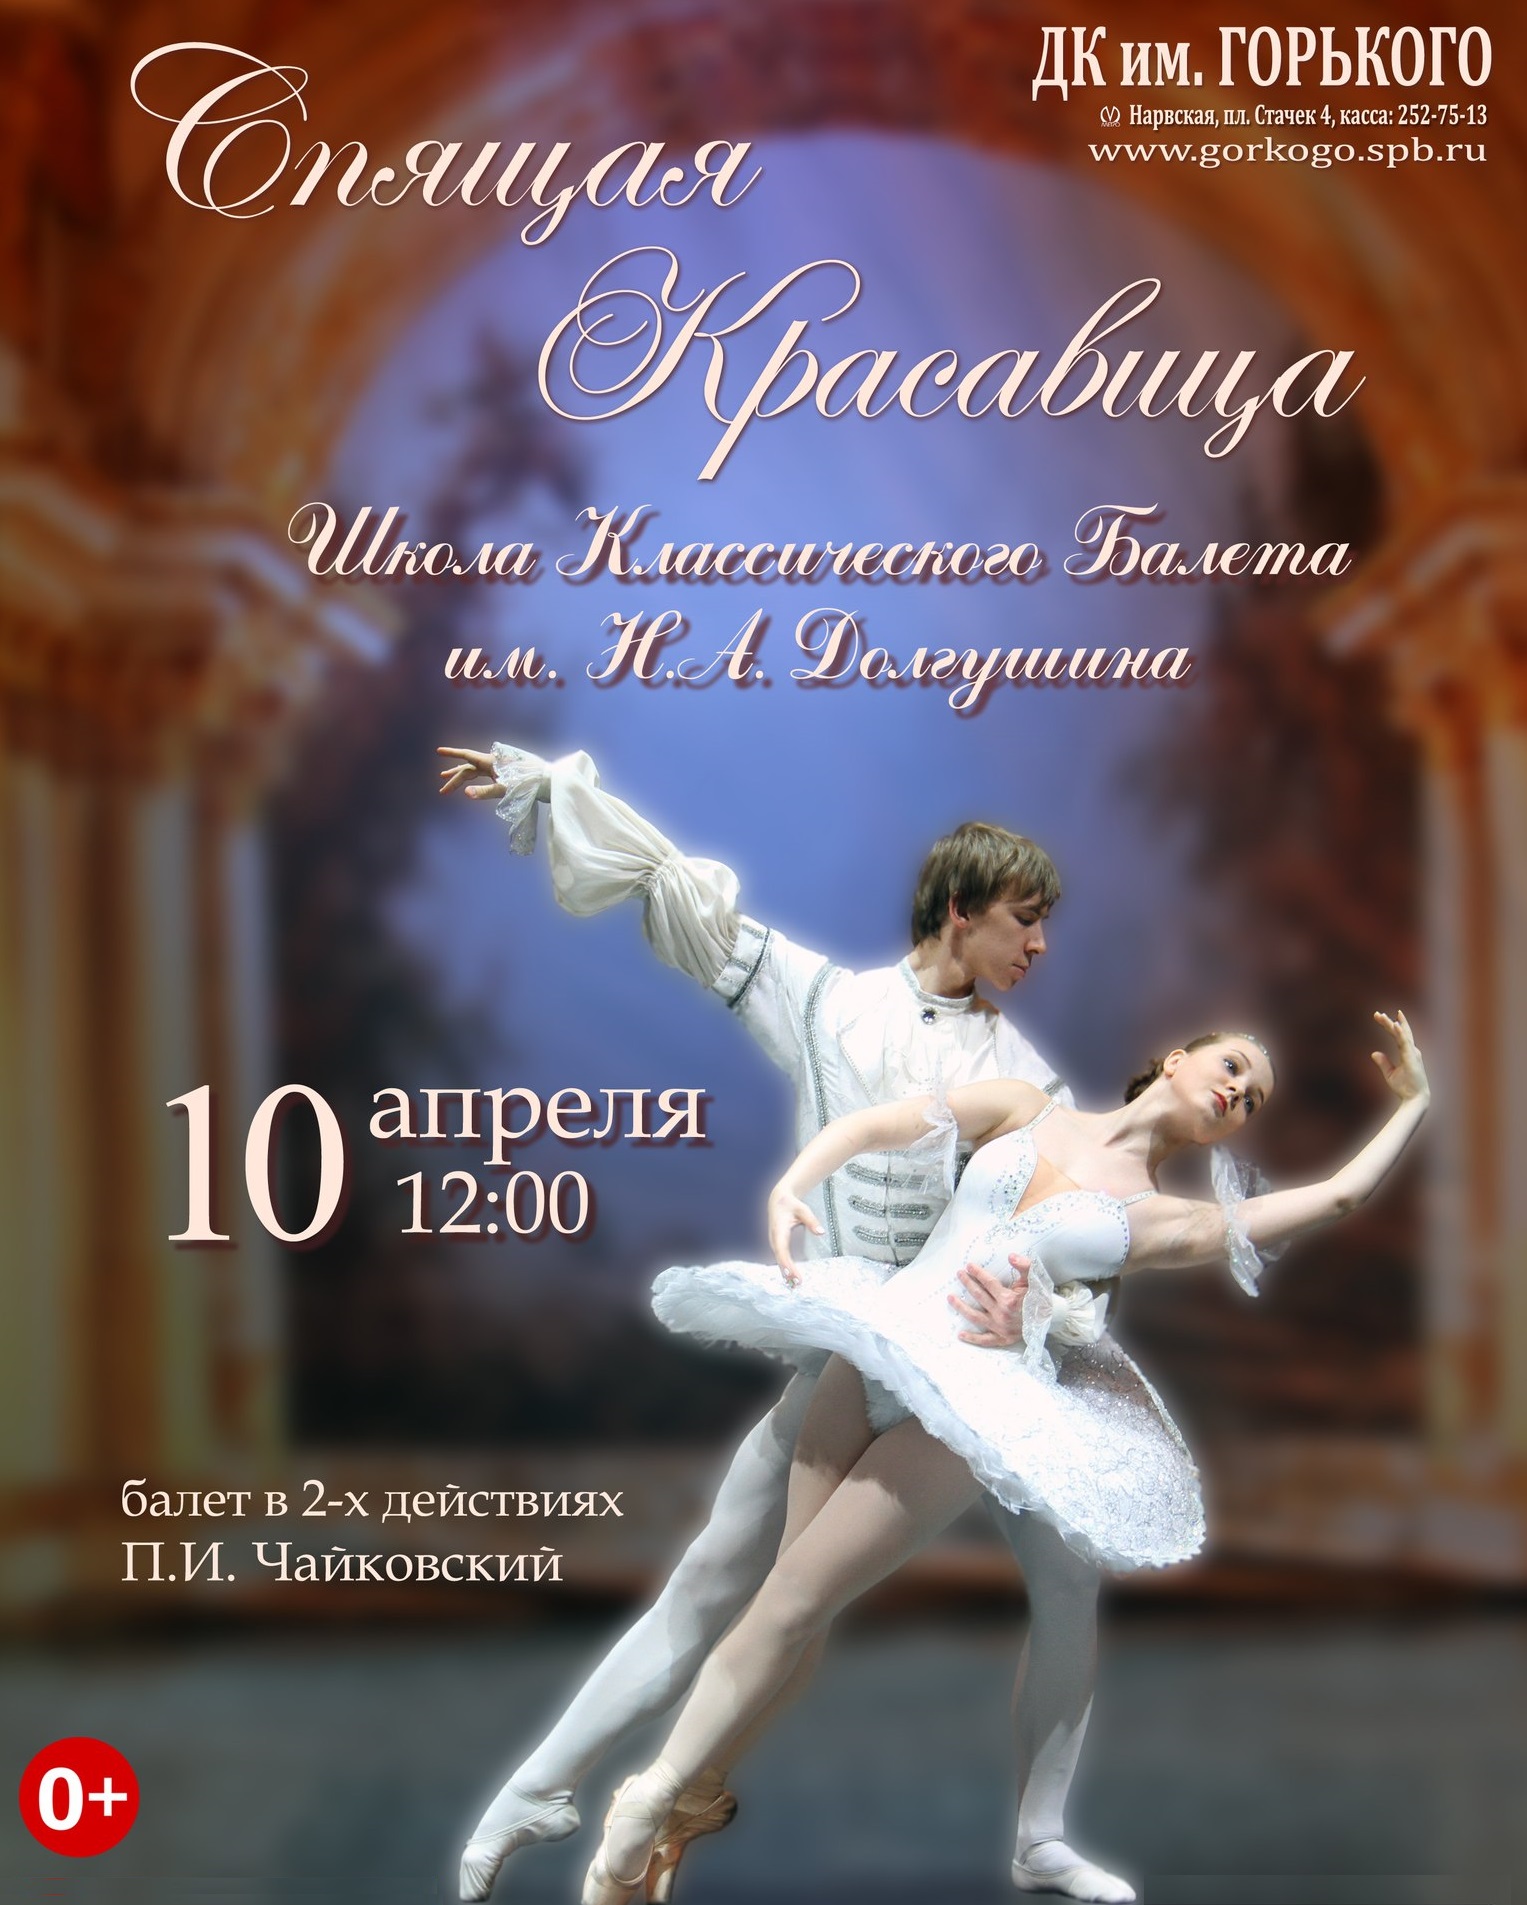 Школа классического балета Долгушина